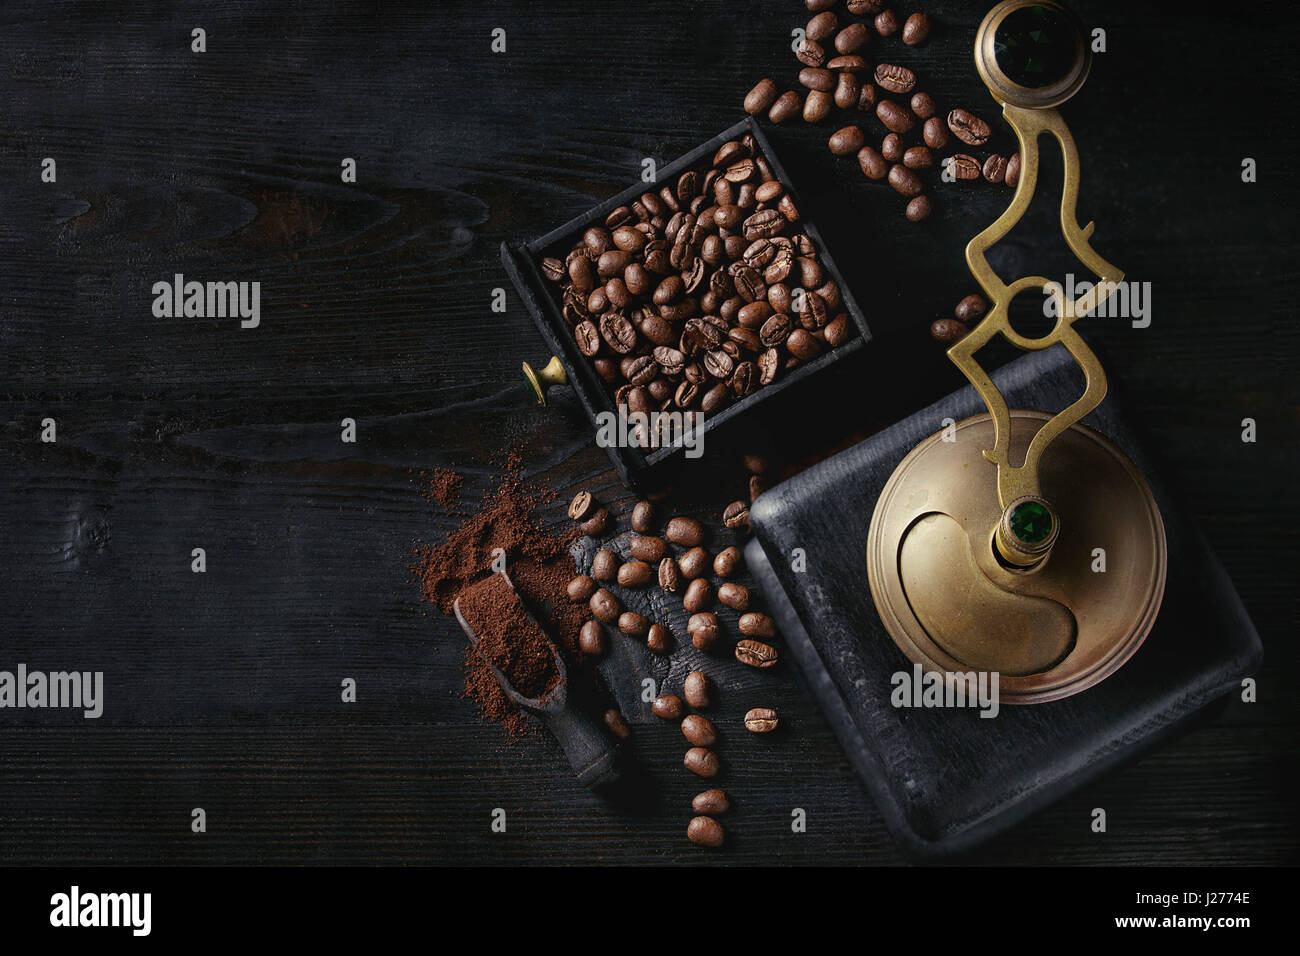 Les grains de café torréfiés et moudre le café dans la boîte en bois avec vintage coffee grinder et scoop sur fond gravé en bois noir. Vue de dessus avec l'espace. Banque D'Images